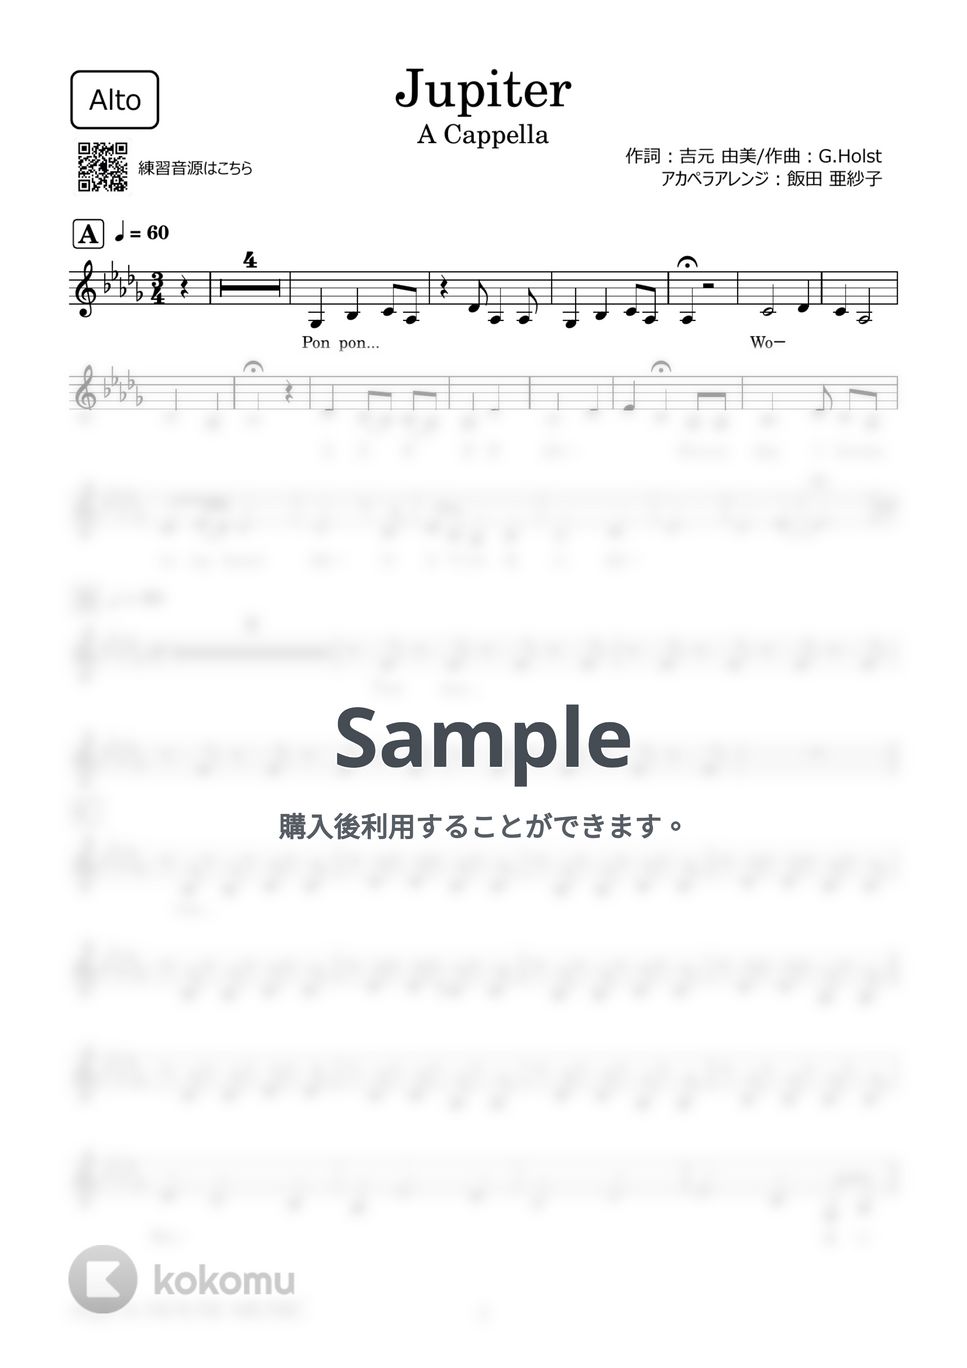 平原 綾香 - Jupiter (アカペラ楽譜♪Altoパート譜) by 飯田 亜紗子